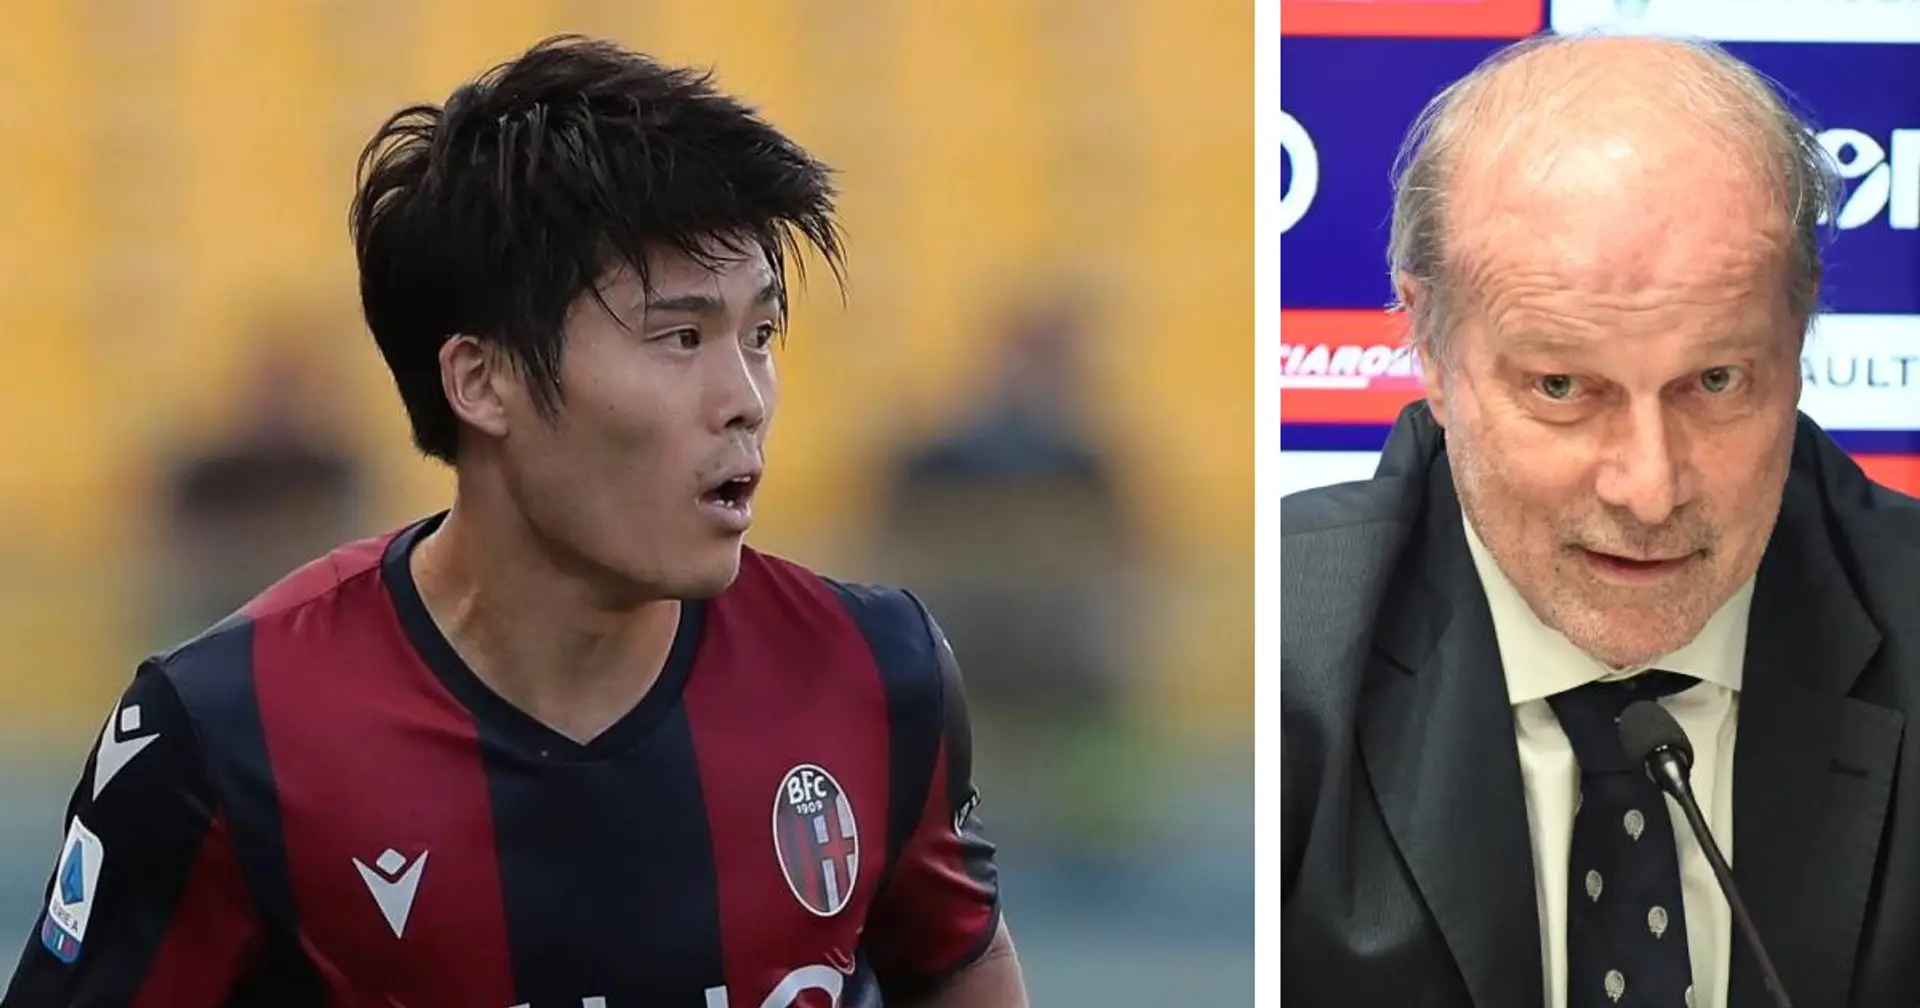 Il ds del Bologna: "Tomiyasu piace a tante big! Potrebbe giocare anche all'Inter, Milan o Juventus" 